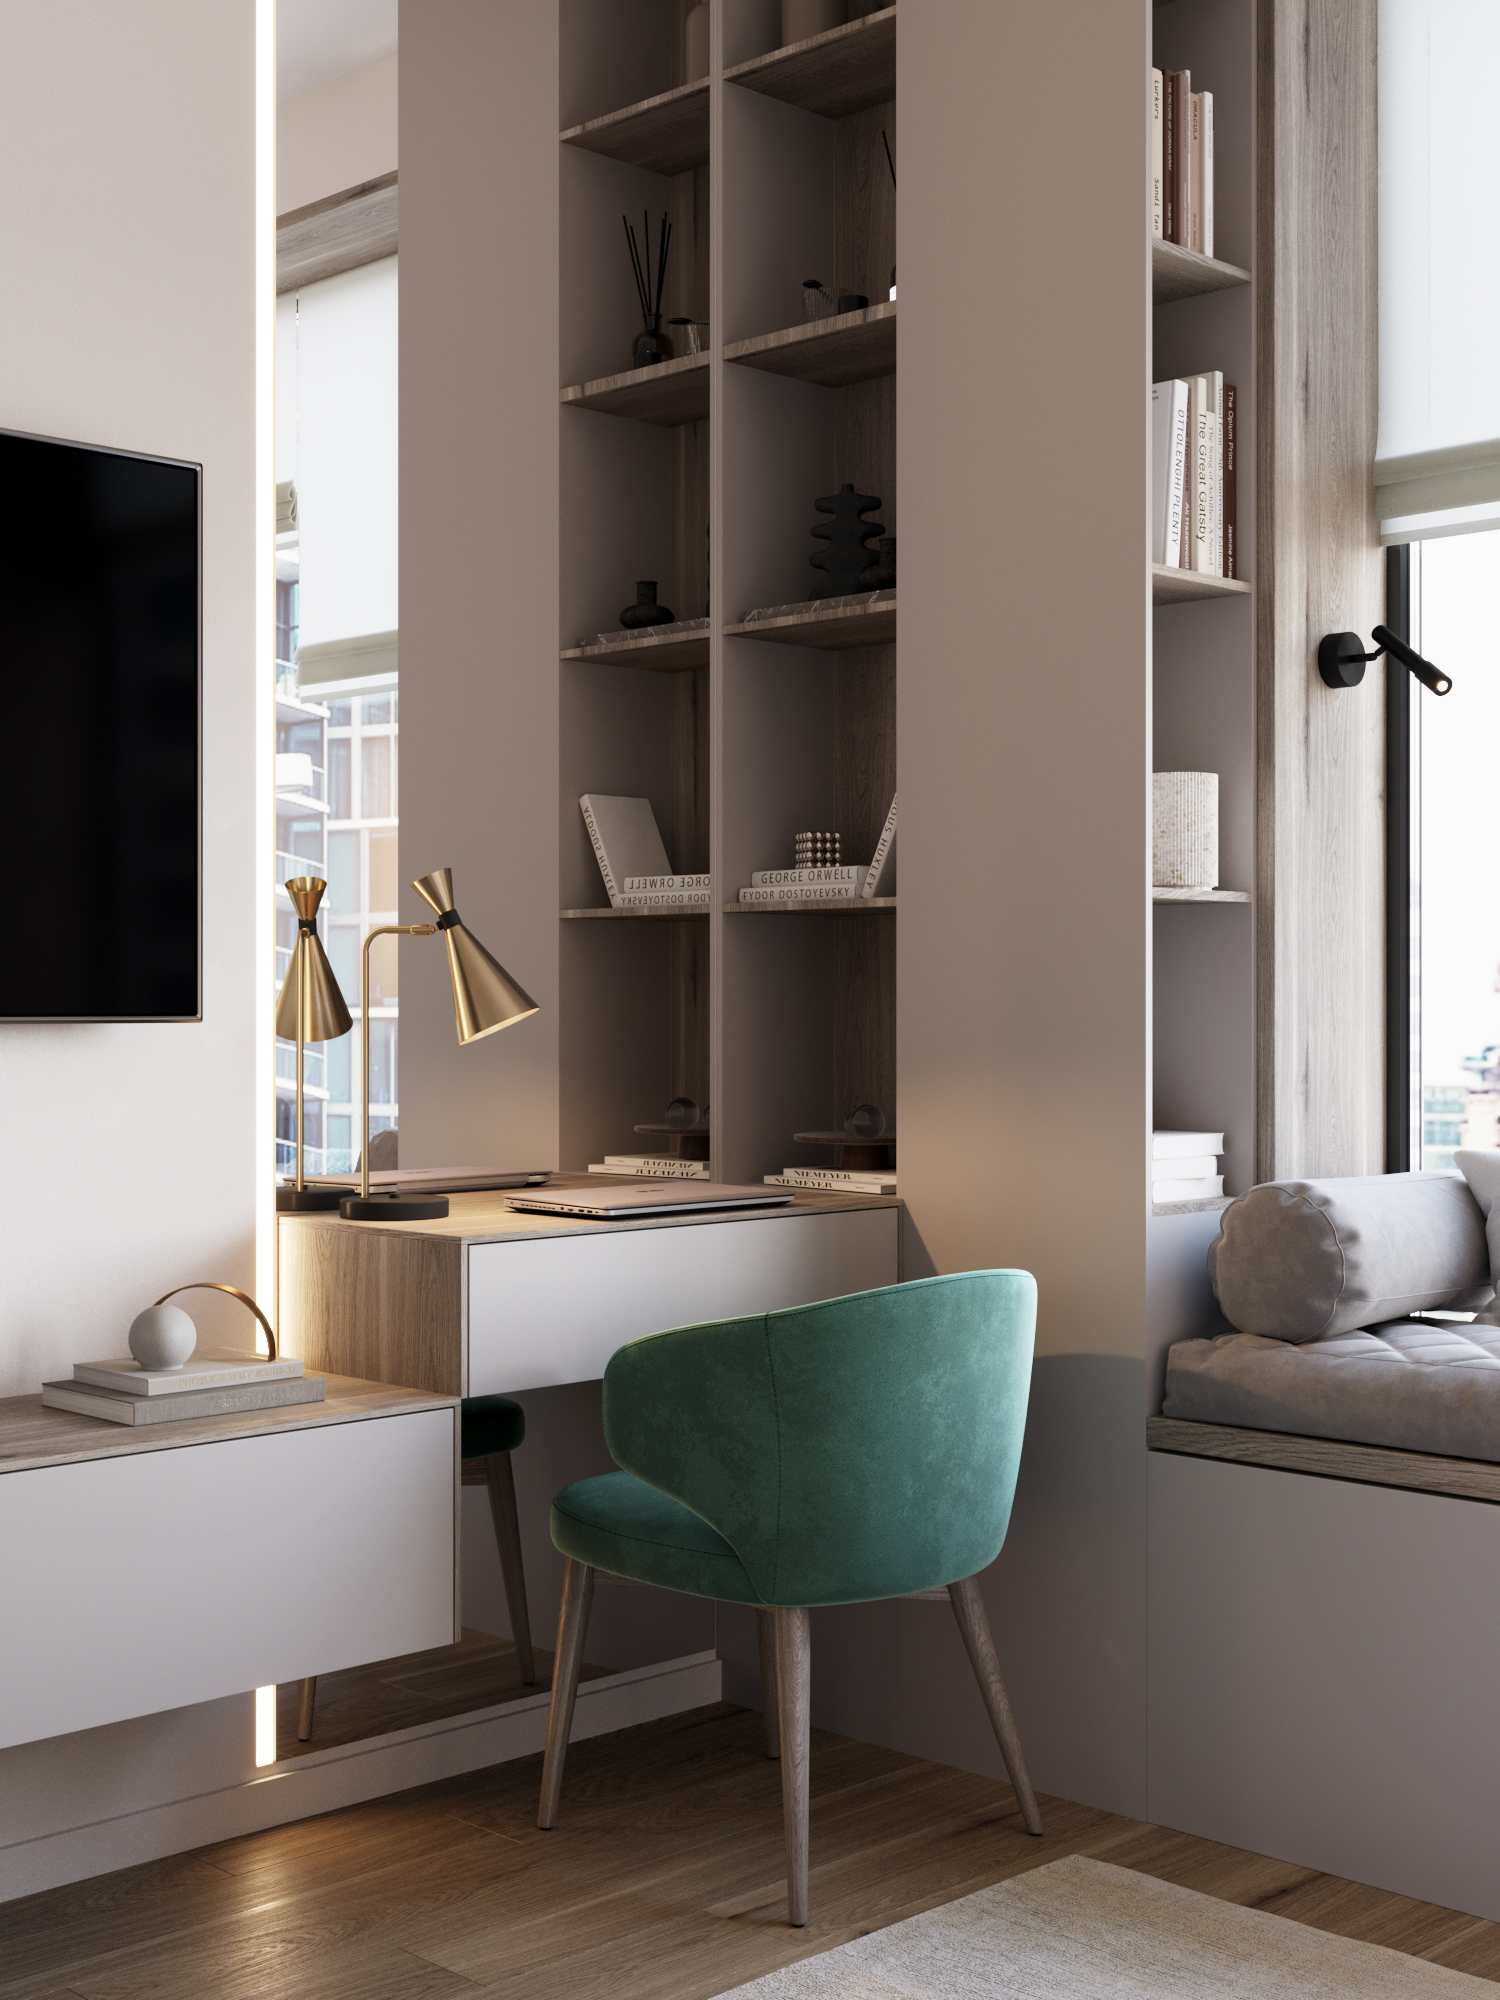 Тренды в дизайне интерьера квартир в 2020 году